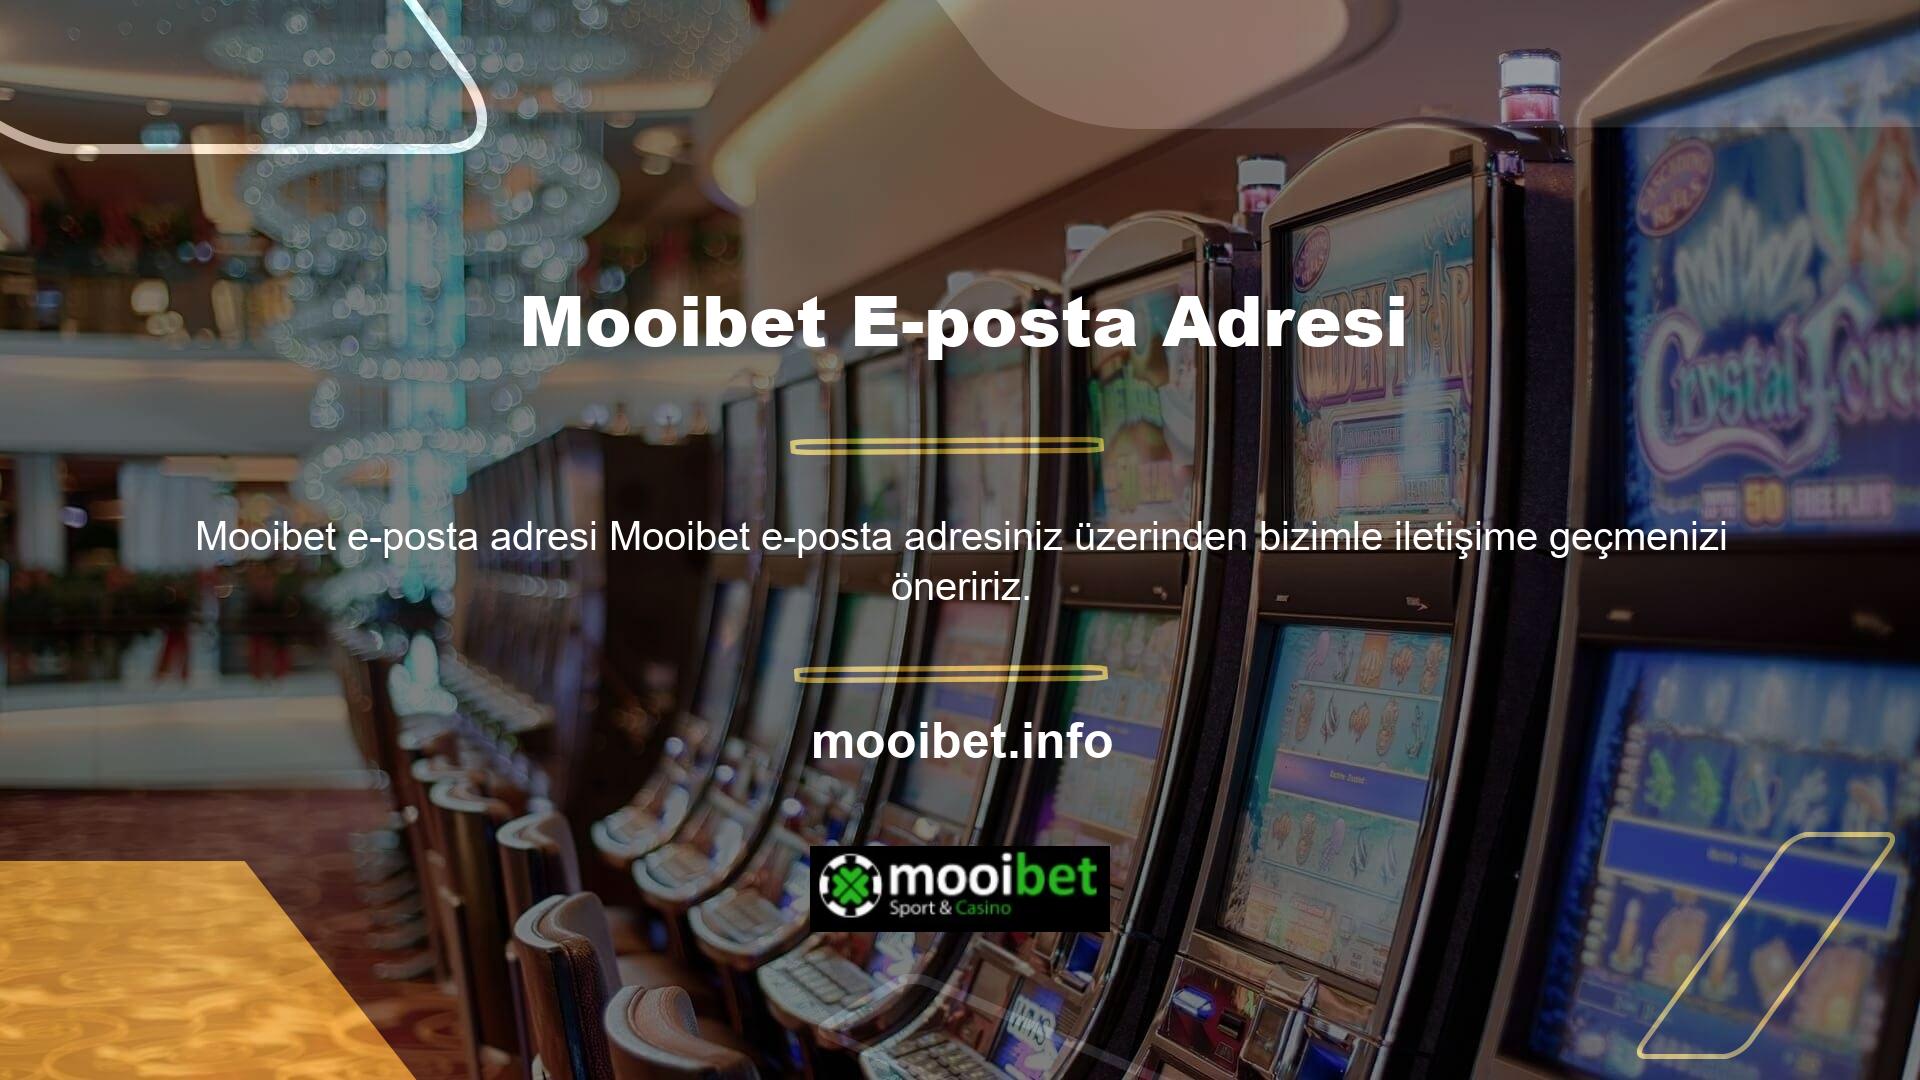 Mooibet adresi değişebilir ama Mooibet e-posta destek hattı değişmeyebilir